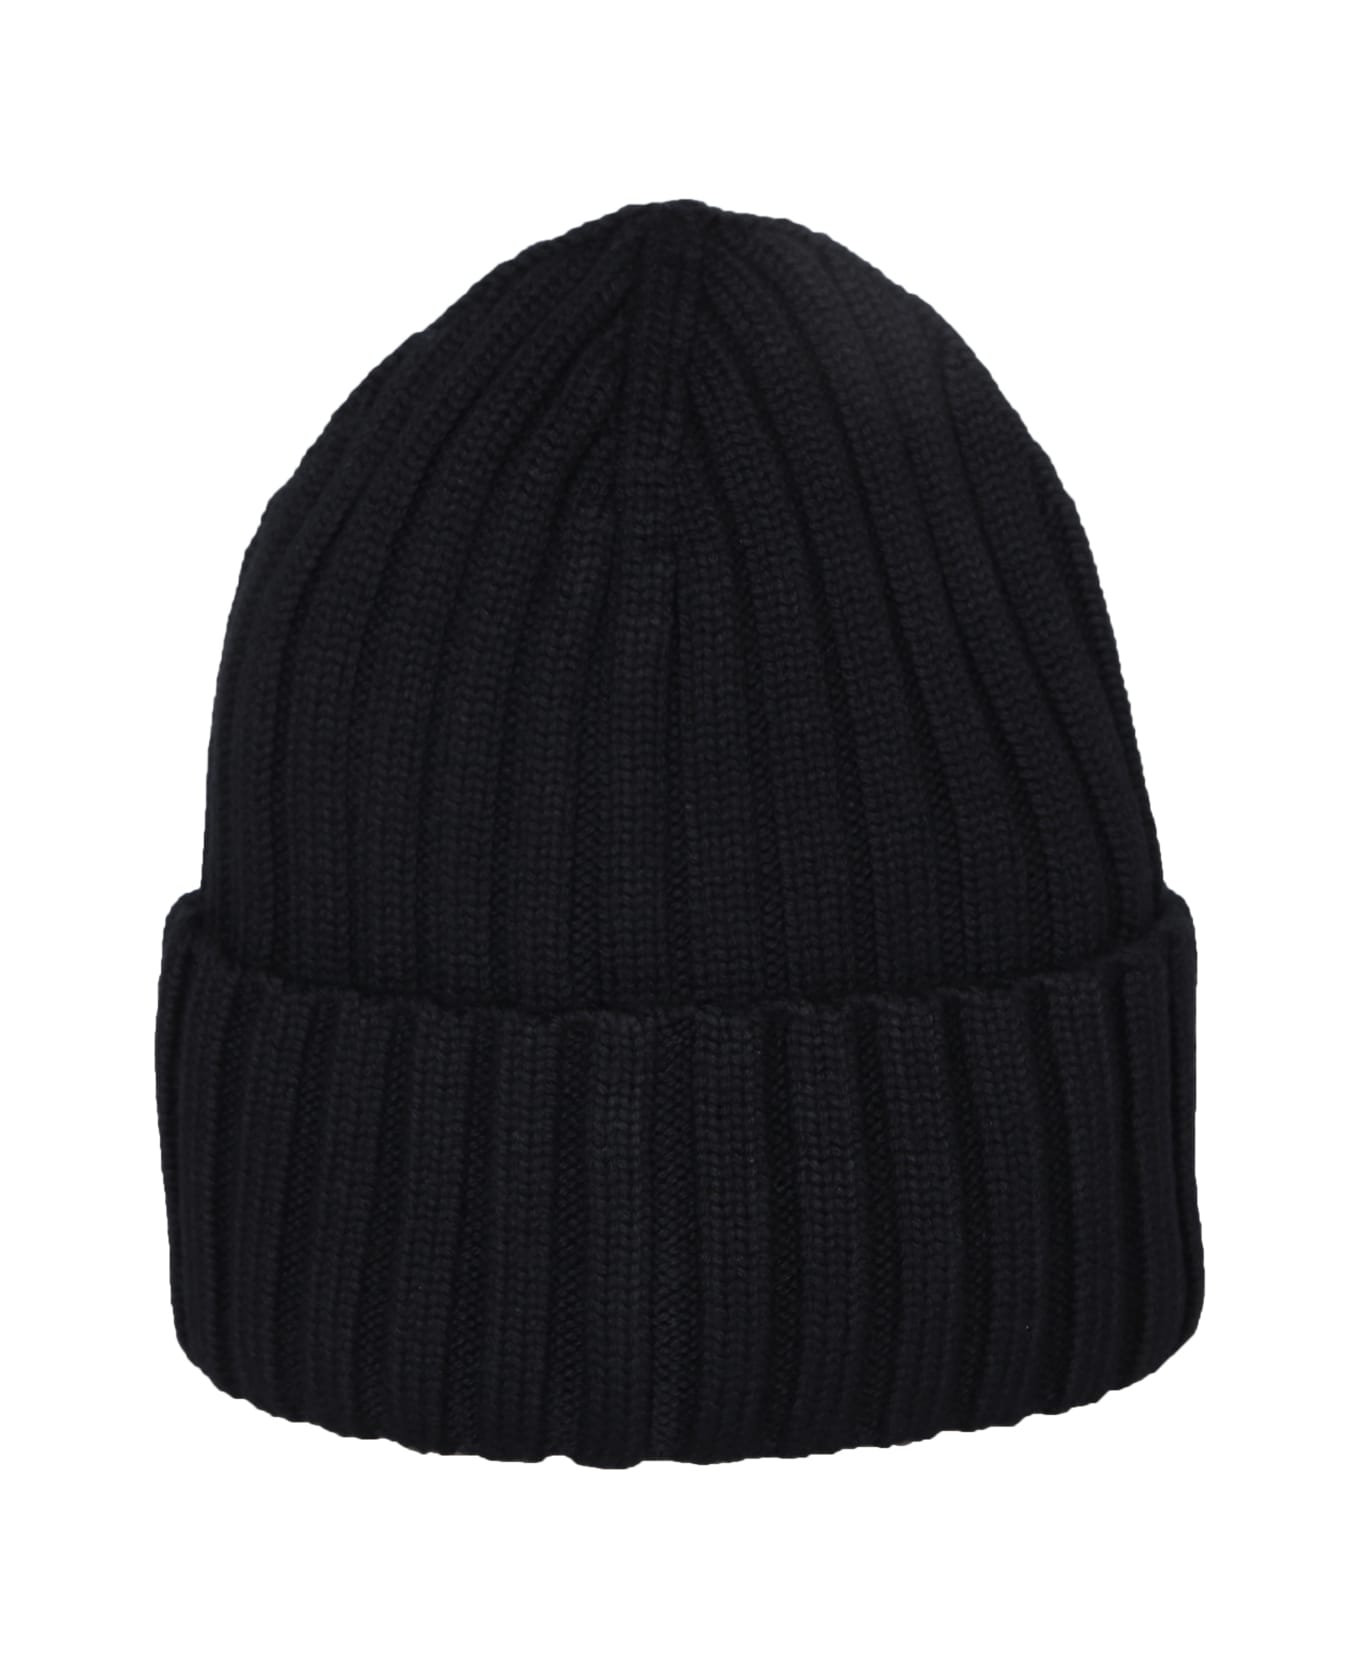 Moncler Tricot Beanie - Black 帽子